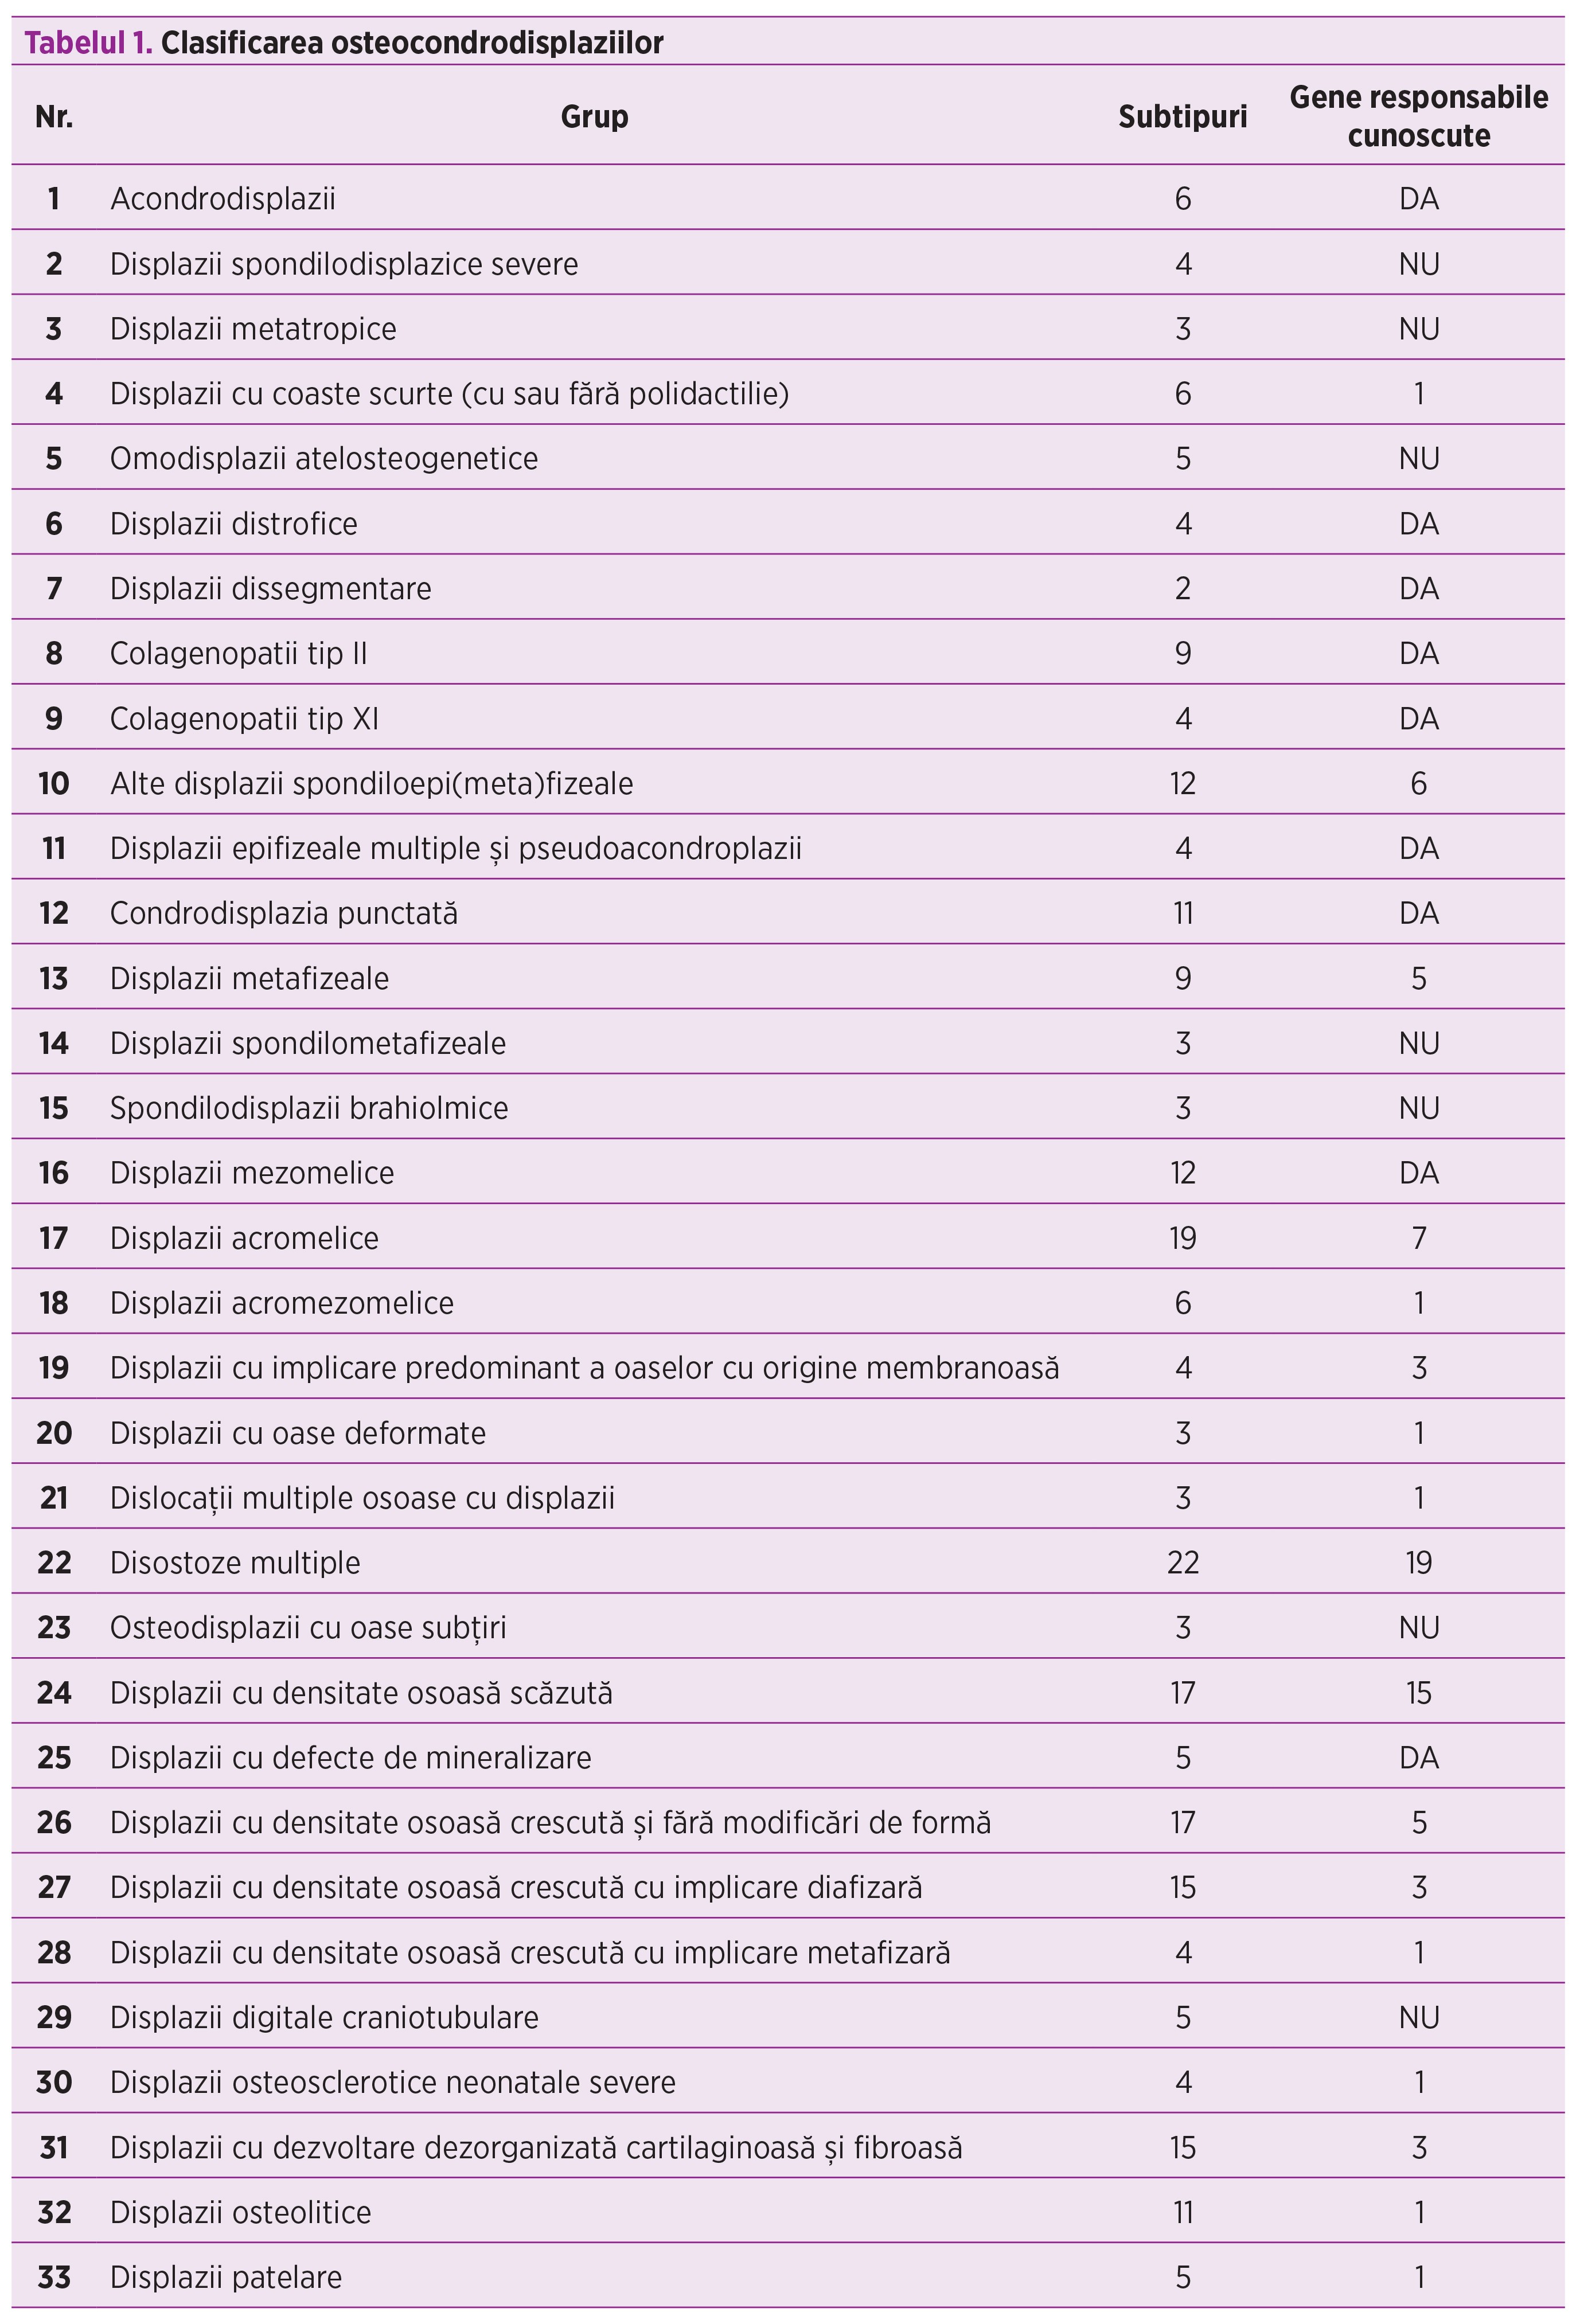 Tabelul 1. Clasificarea osteocondrodisplaziilor